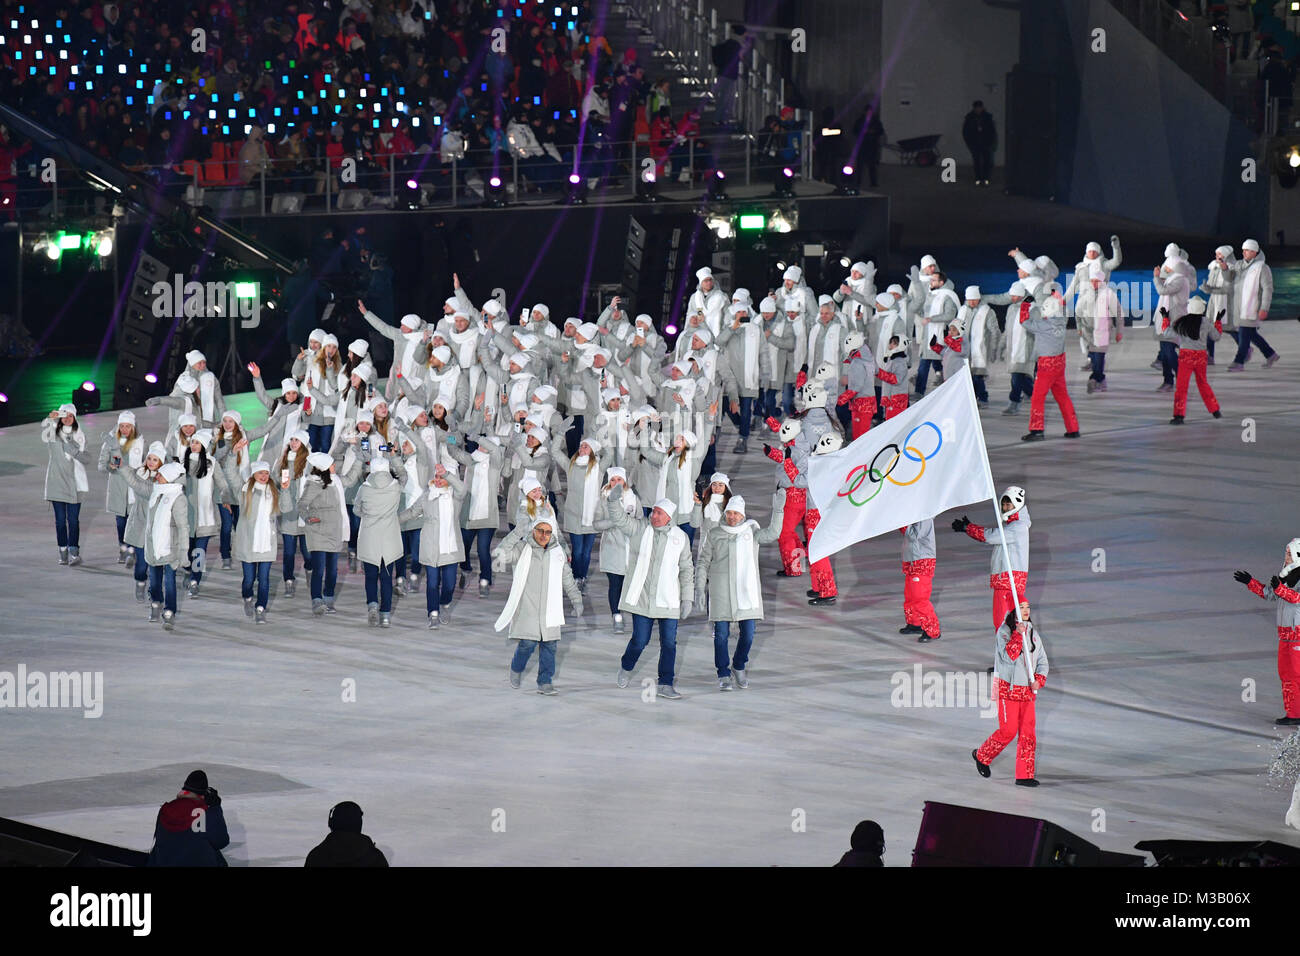 Церемония открытия соревнований. Спортсмены Пхенчхан 2018.